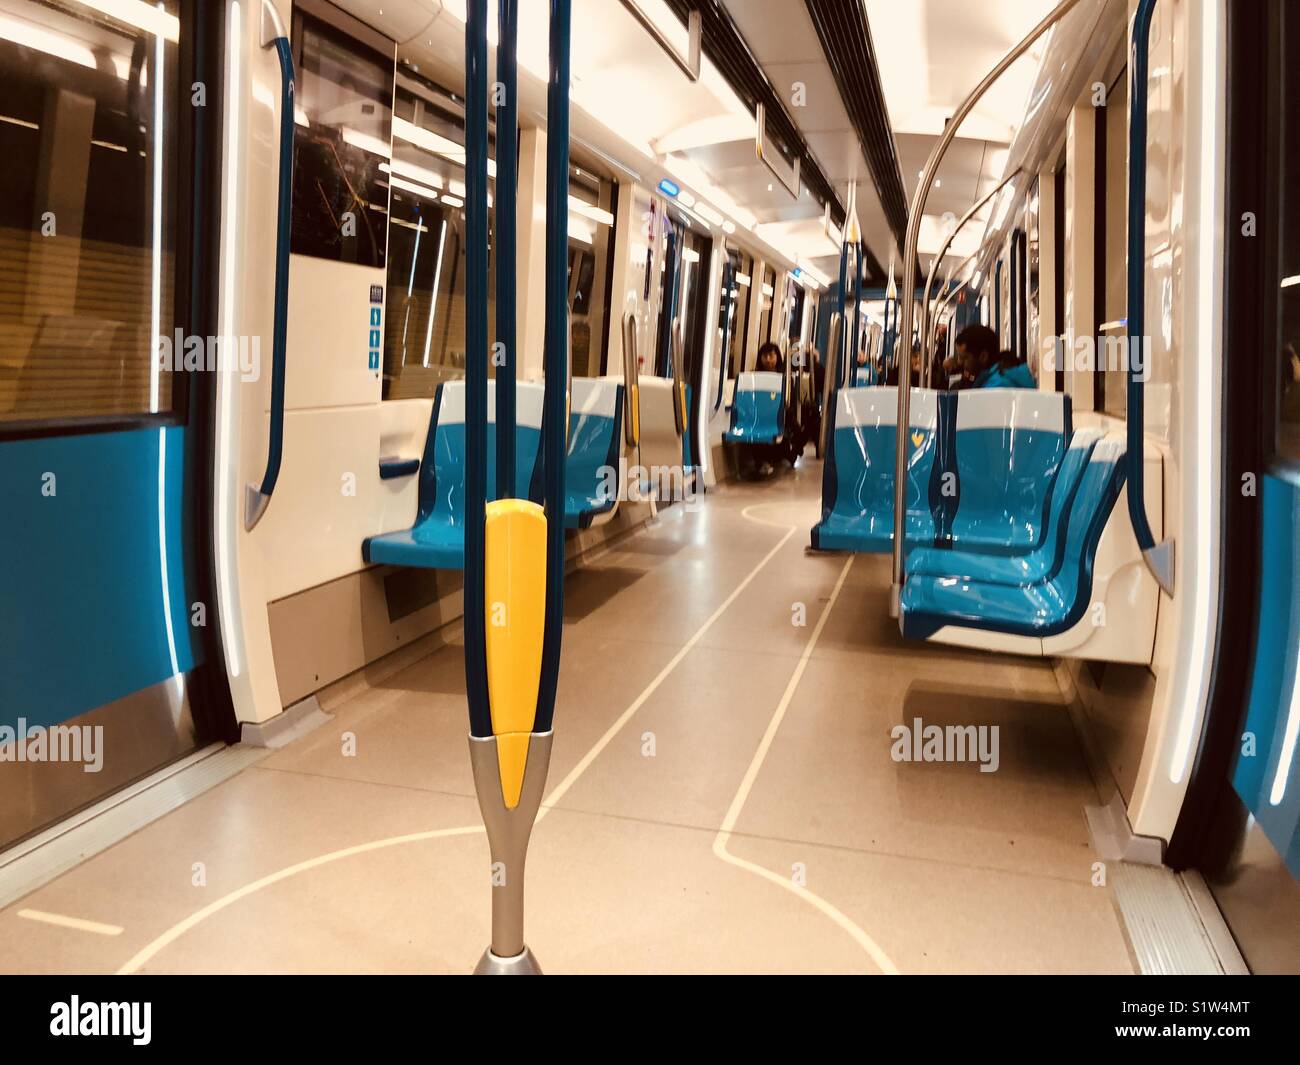 Menschen, die in der Metro, in Soo viel Spaß, Kühlen, Sky Blue Chairs, mit der gelben Pol, in der U-Bahn sehen, Soo viel Spaß, beim Fahren, In der Mitte stehen, leuchtet immer auf, Soo viel Faulheit. Stockfoto